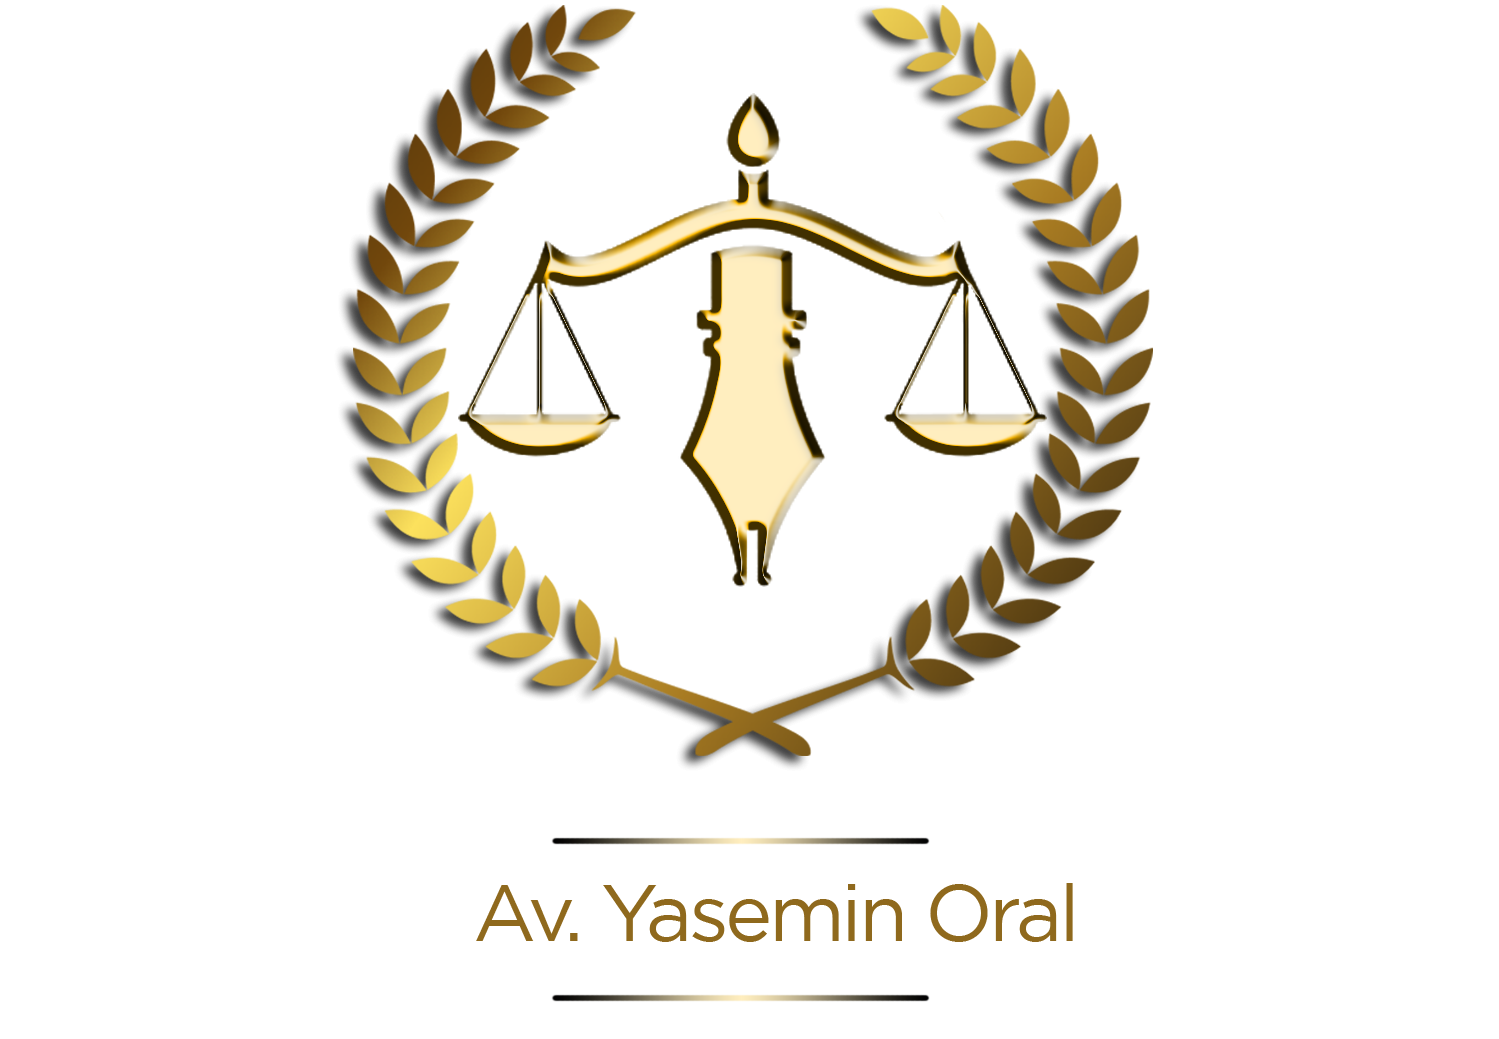 Av. Yasemin Oral